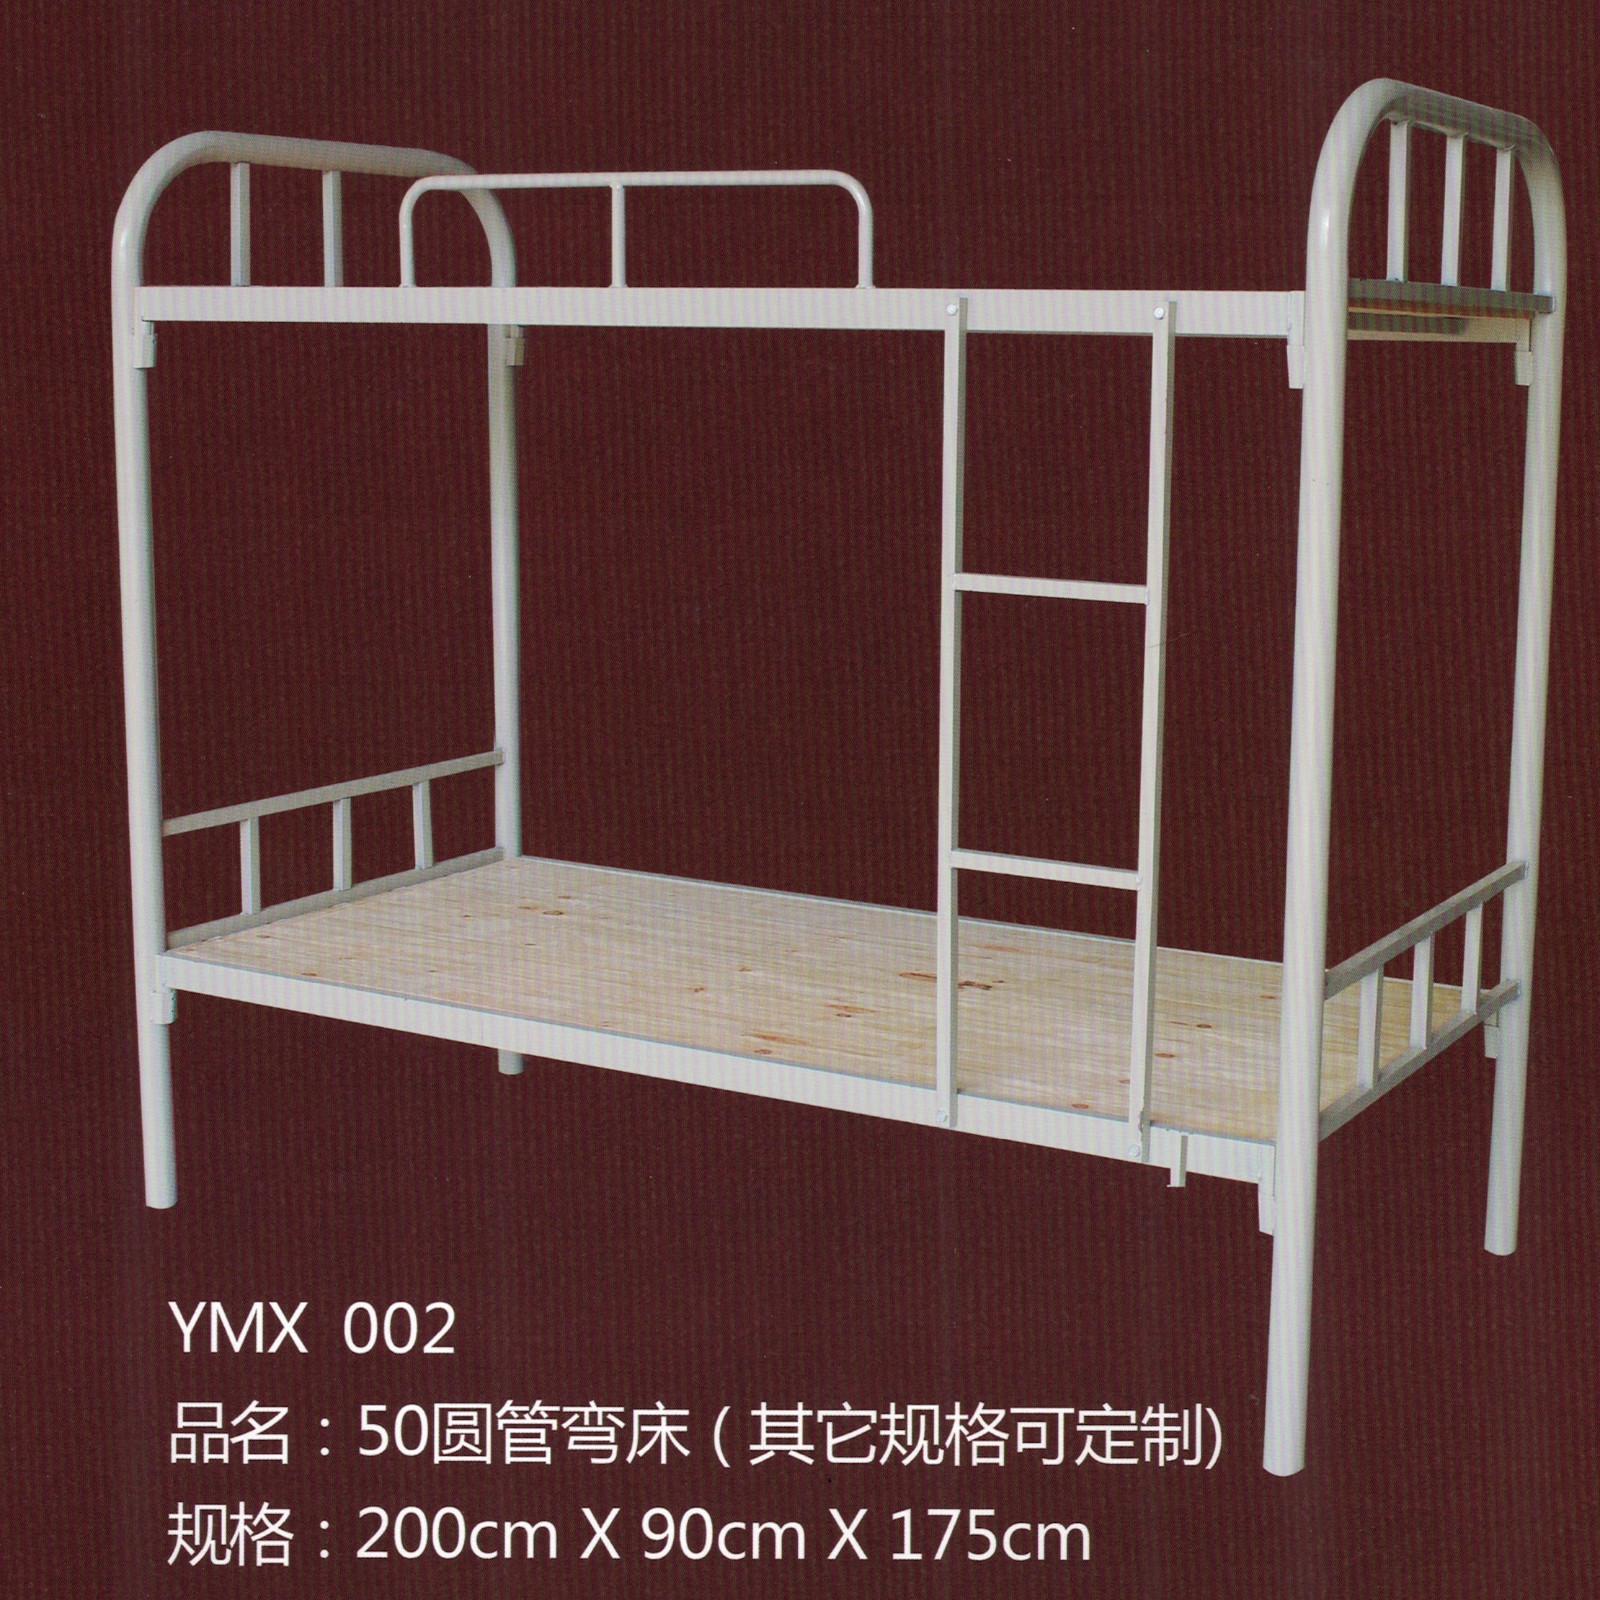 上下铁架床 工厂宿舍房间铁架床 钢质铁架床 双层架子床